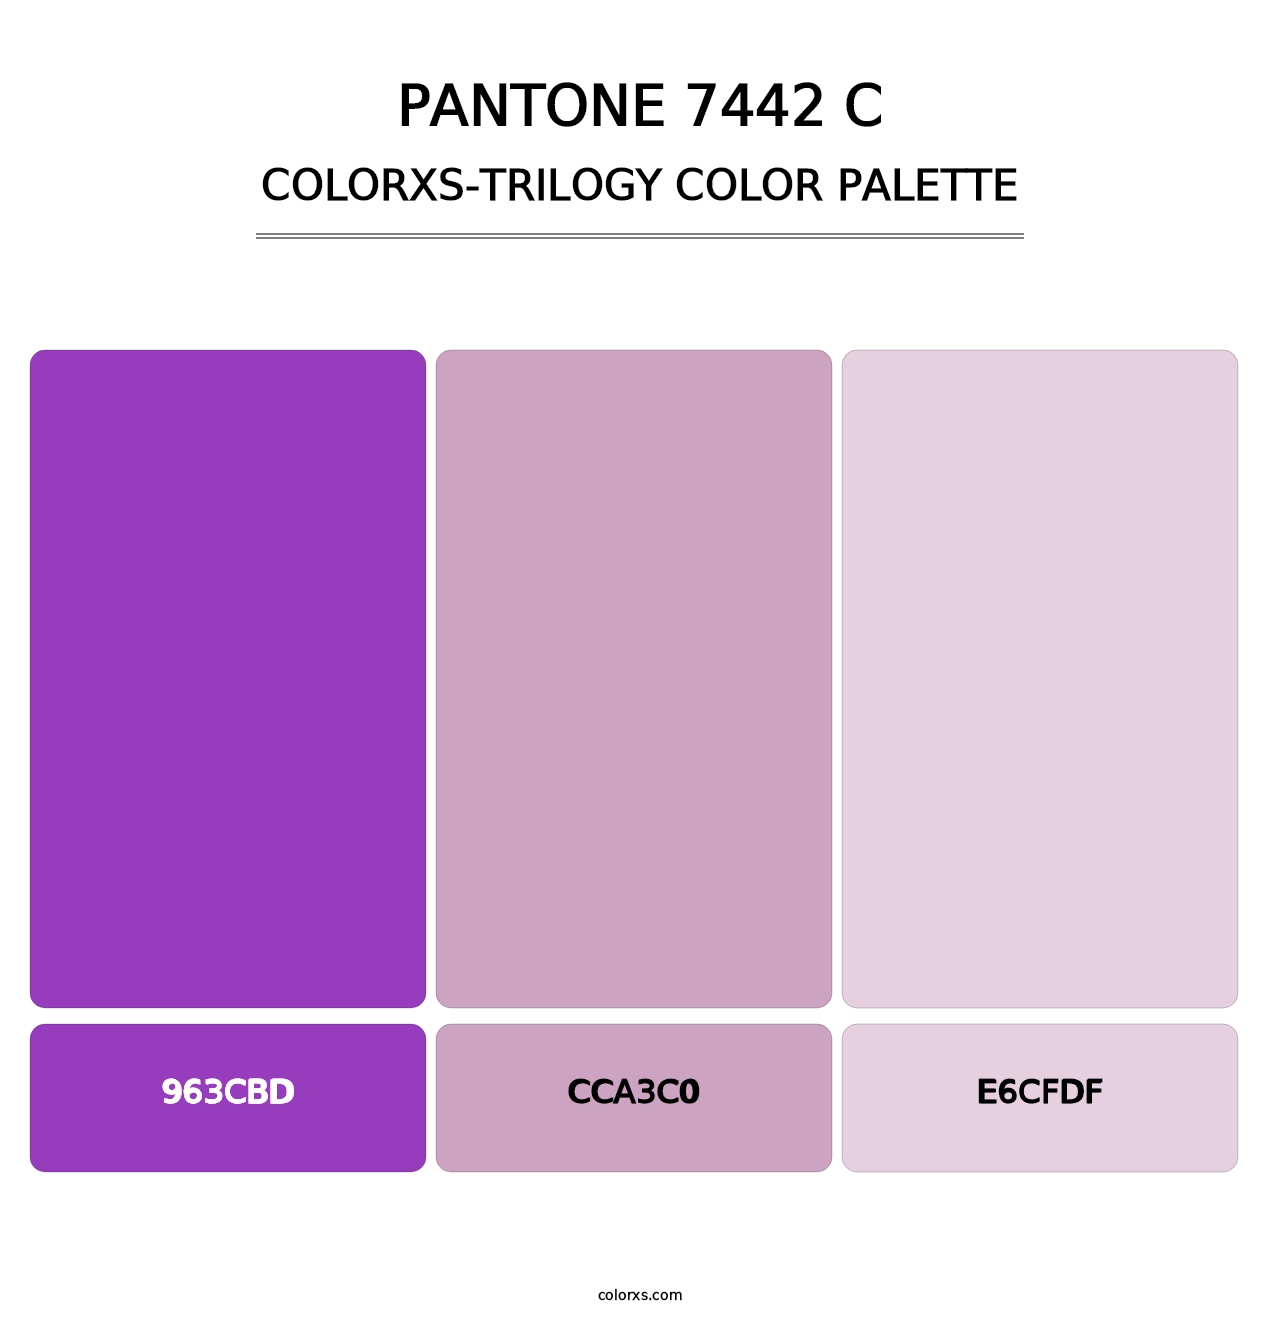 PANTONE 7442 C - Colorxs Trilogy Palette